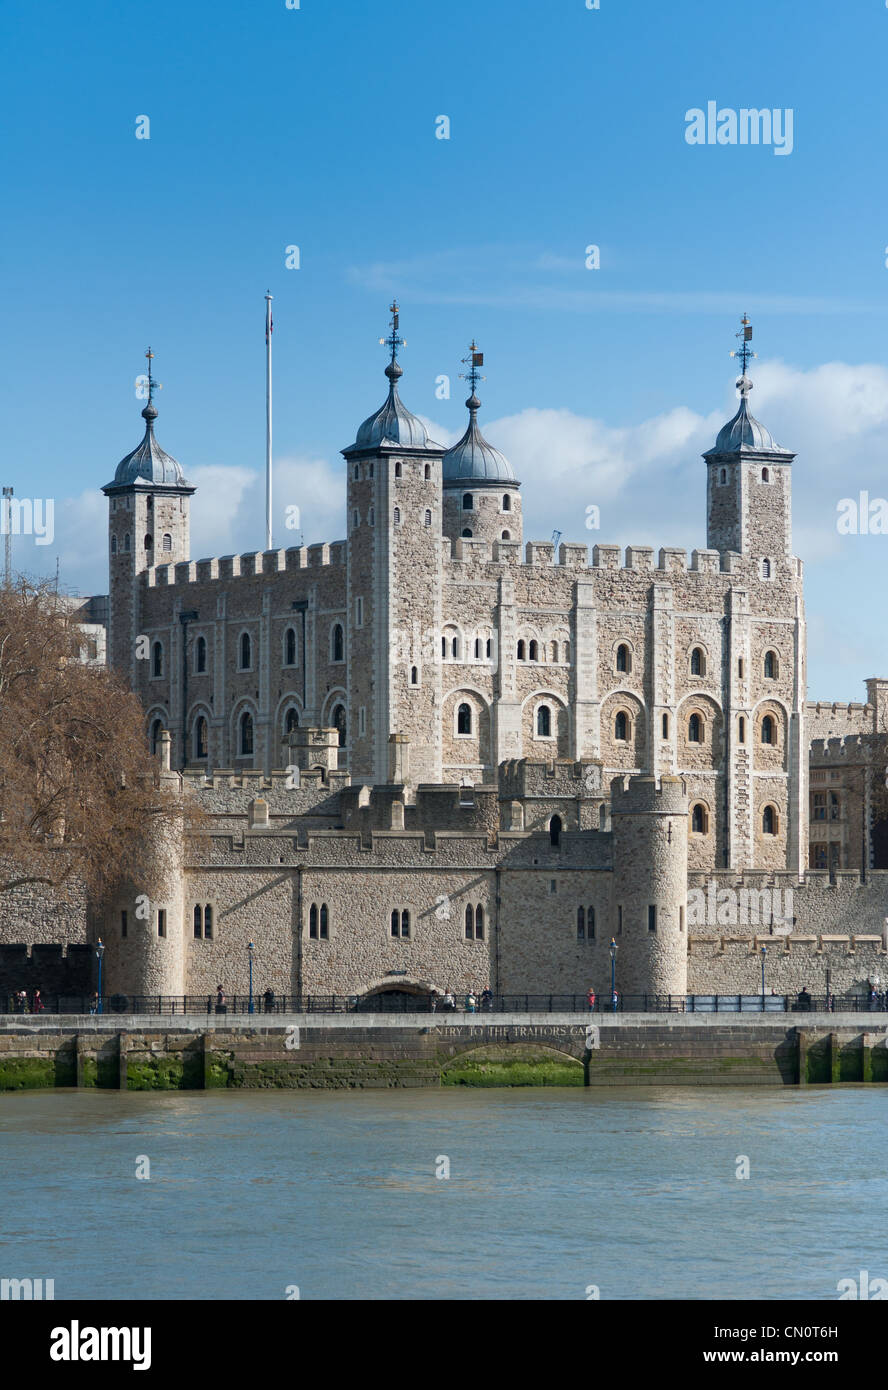 Der Tower von London, England. Stockfoto